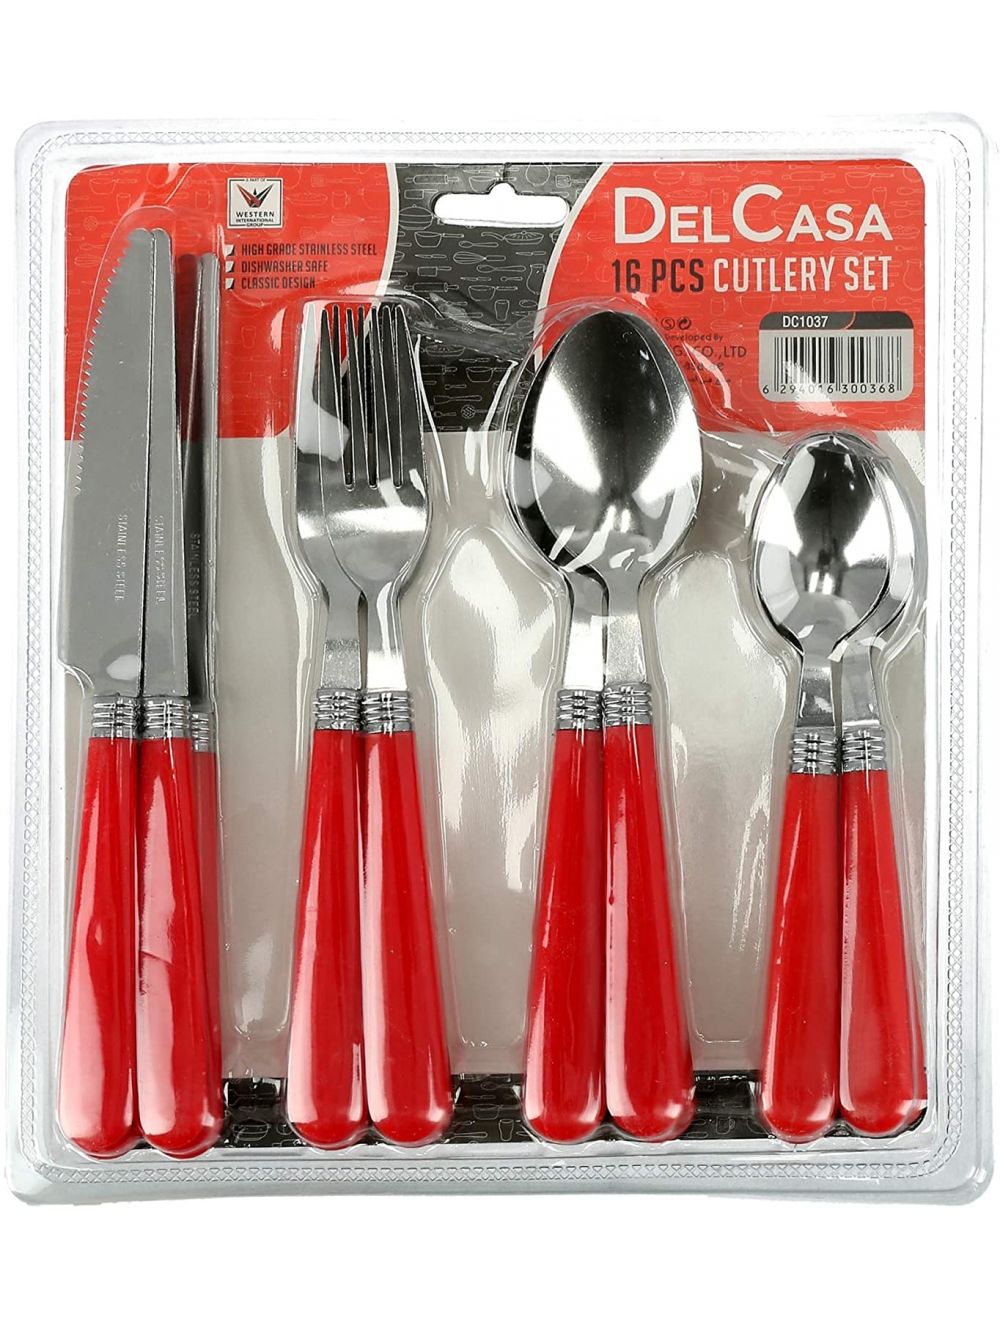 Delcasa 16 Pcs Cutlery Set -DC1037(Assorted Colour)